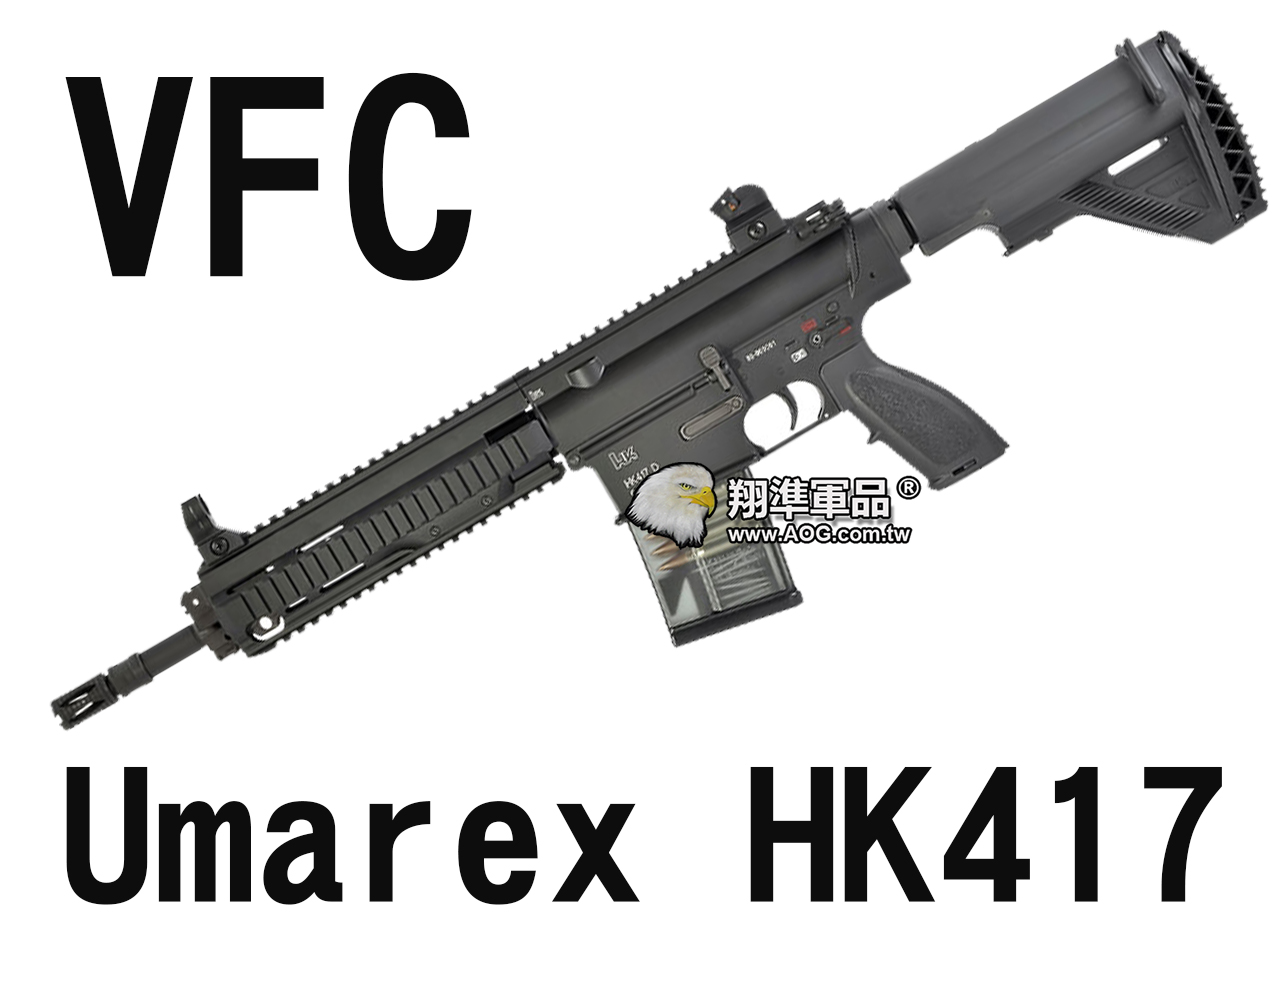 【翔準軍品AOG】【VFC】Umarex HK417 海軍托 魚骨版 電動槍 狙擊槍 黑色 VF1-LHK417-BK01 